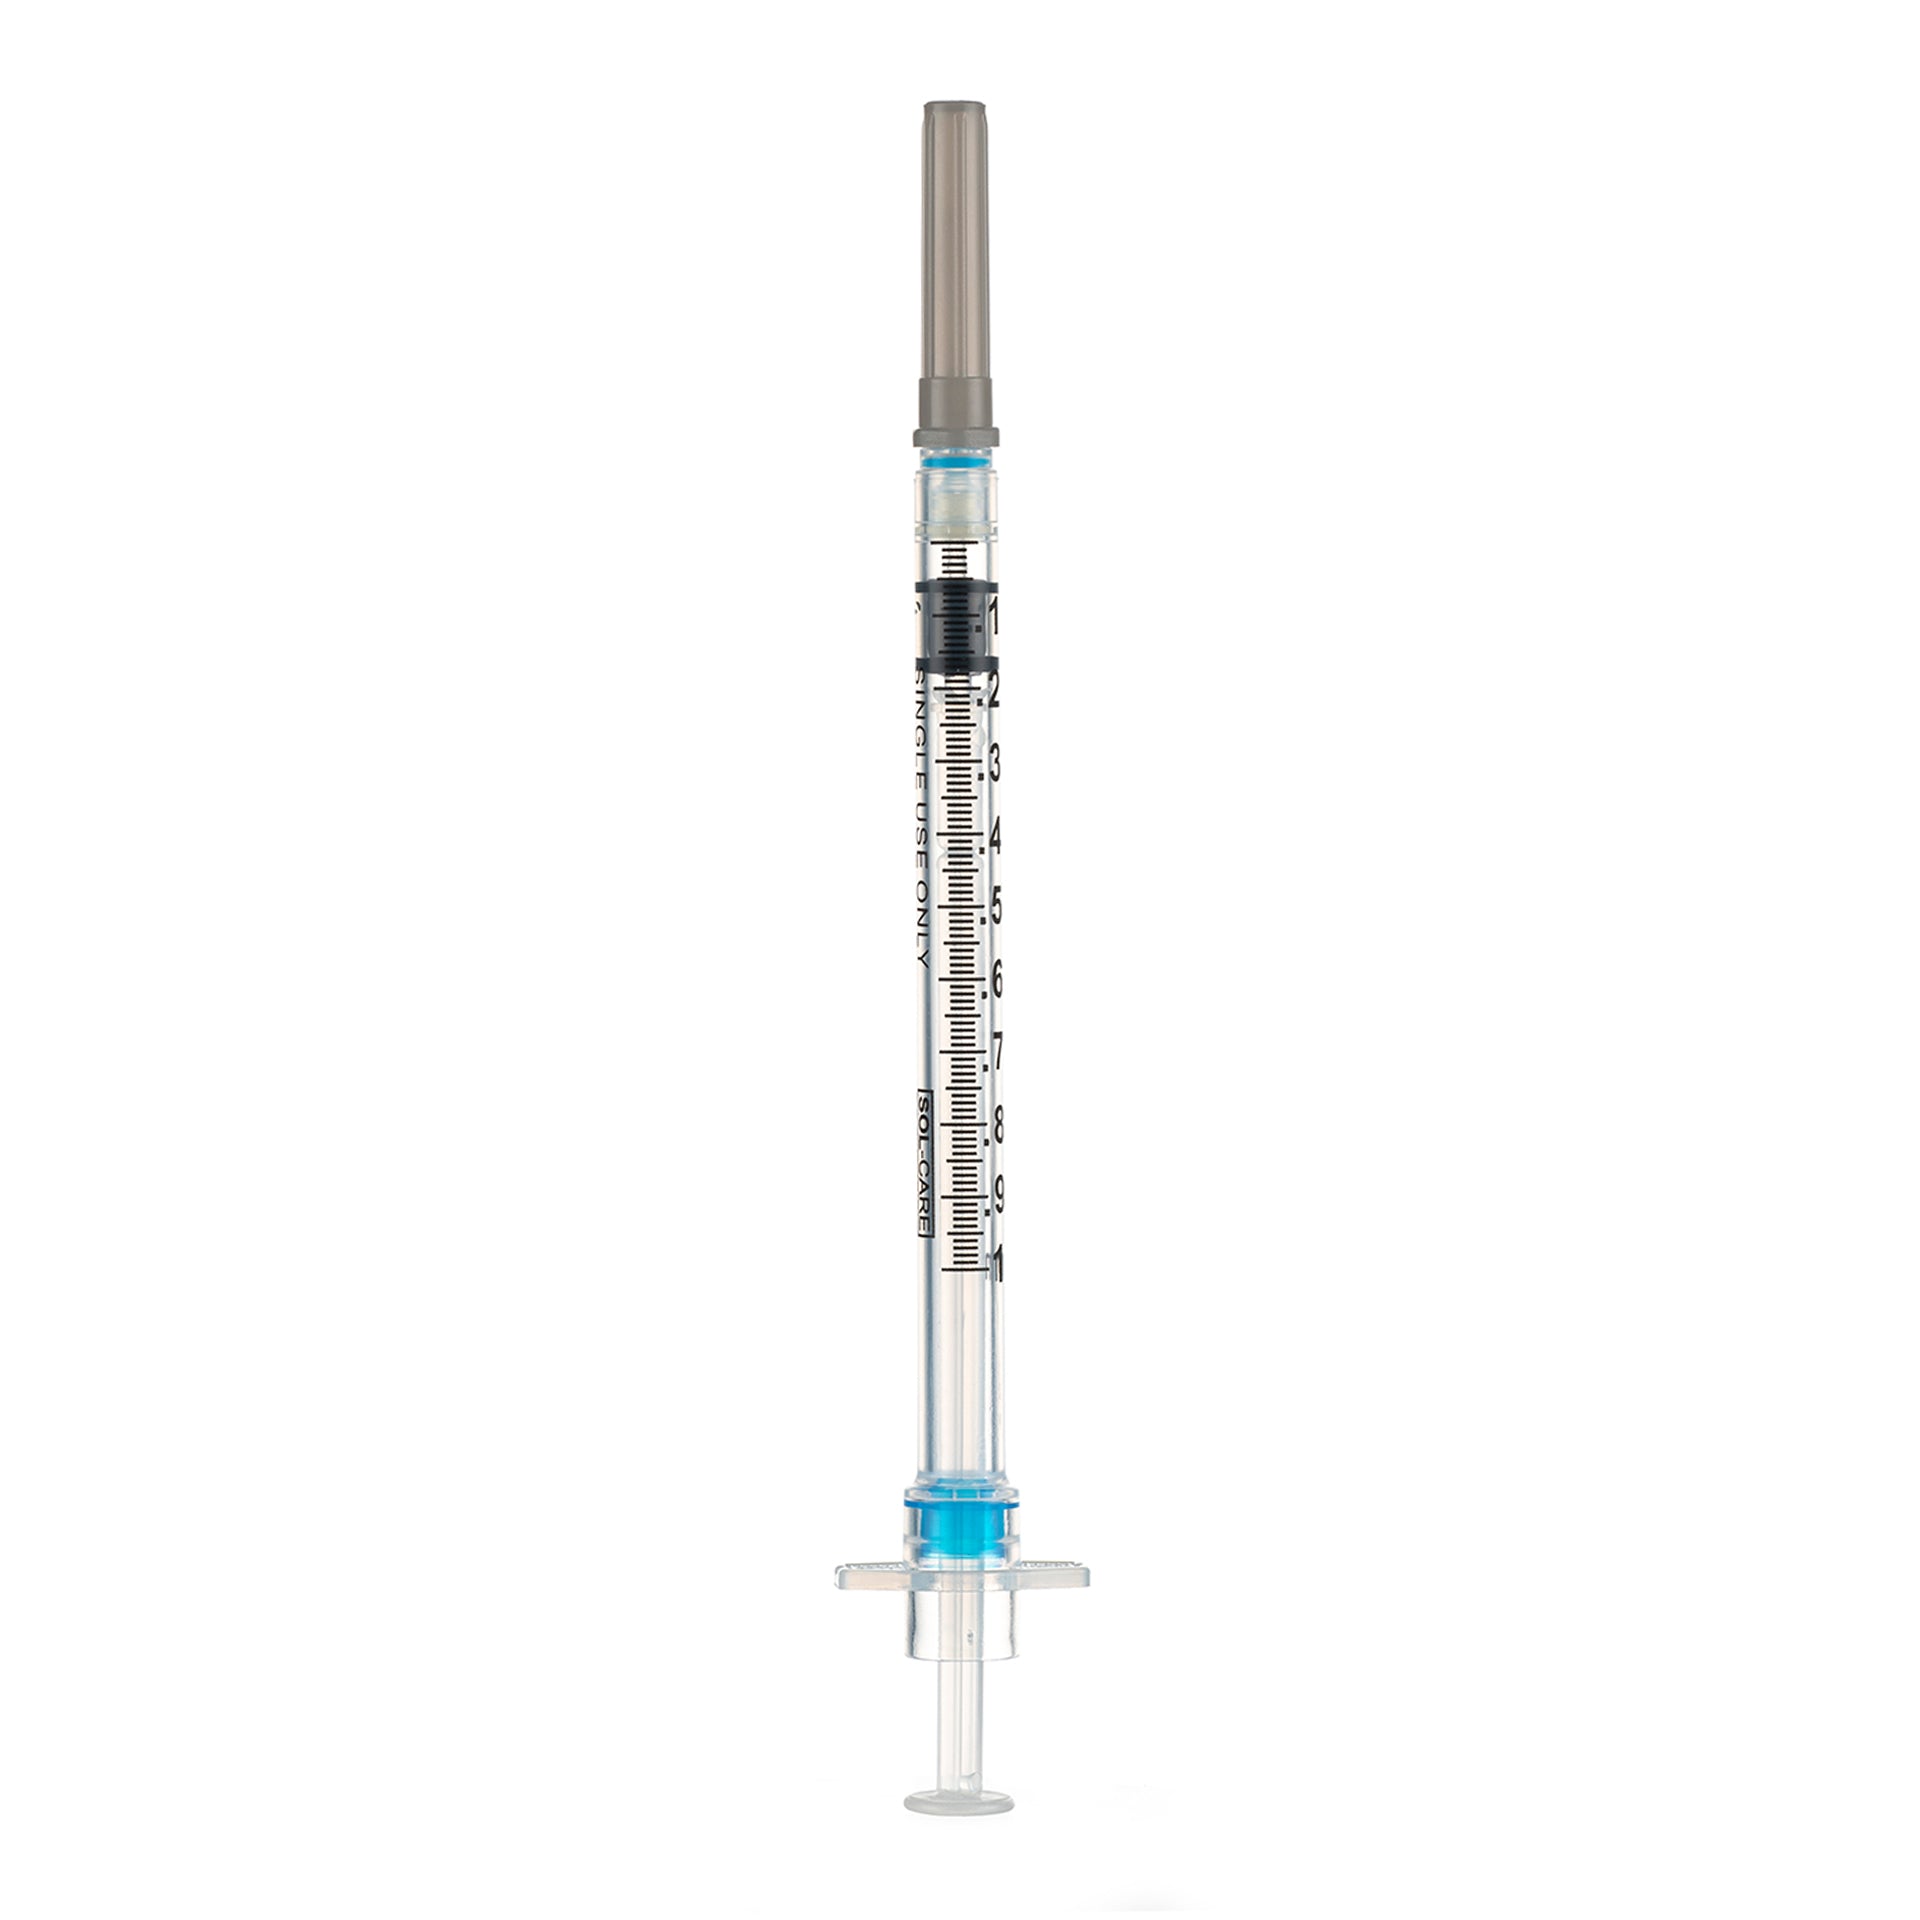 BX/100 - SOL-CARE 1ml TB Safety Syringe w/Fixed Needle 27G*1/2